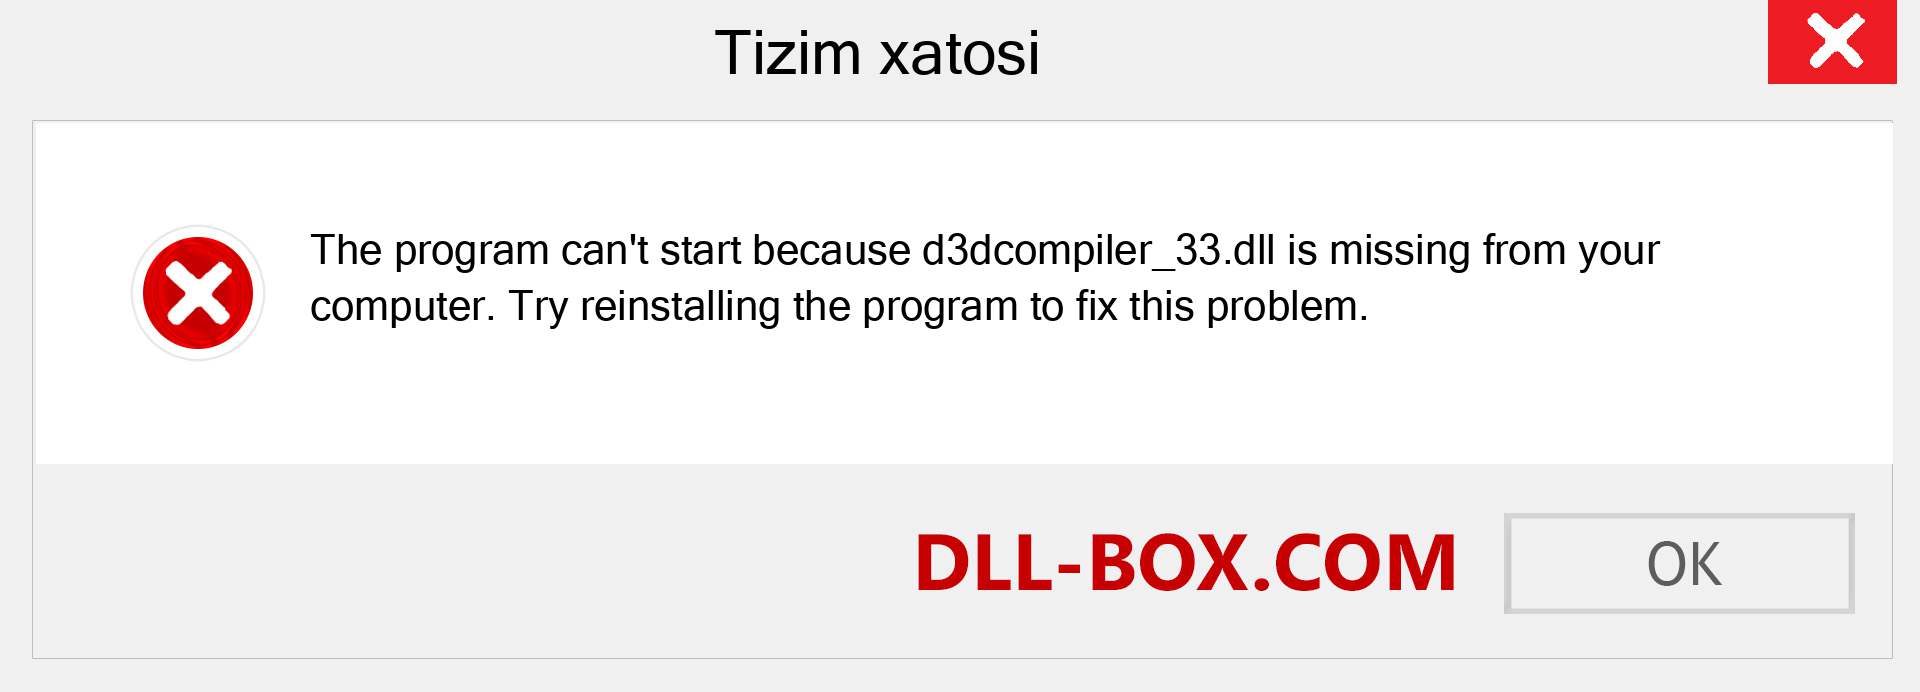 d3dcompiler_33.dll fayli yo'qolganmi?. Windows 7, 8, 10 uchun yuklab olish - Windowsda d3dcompiler_33 dll etishmayotgan xatoni tuzating, rasmlar, rasmlar